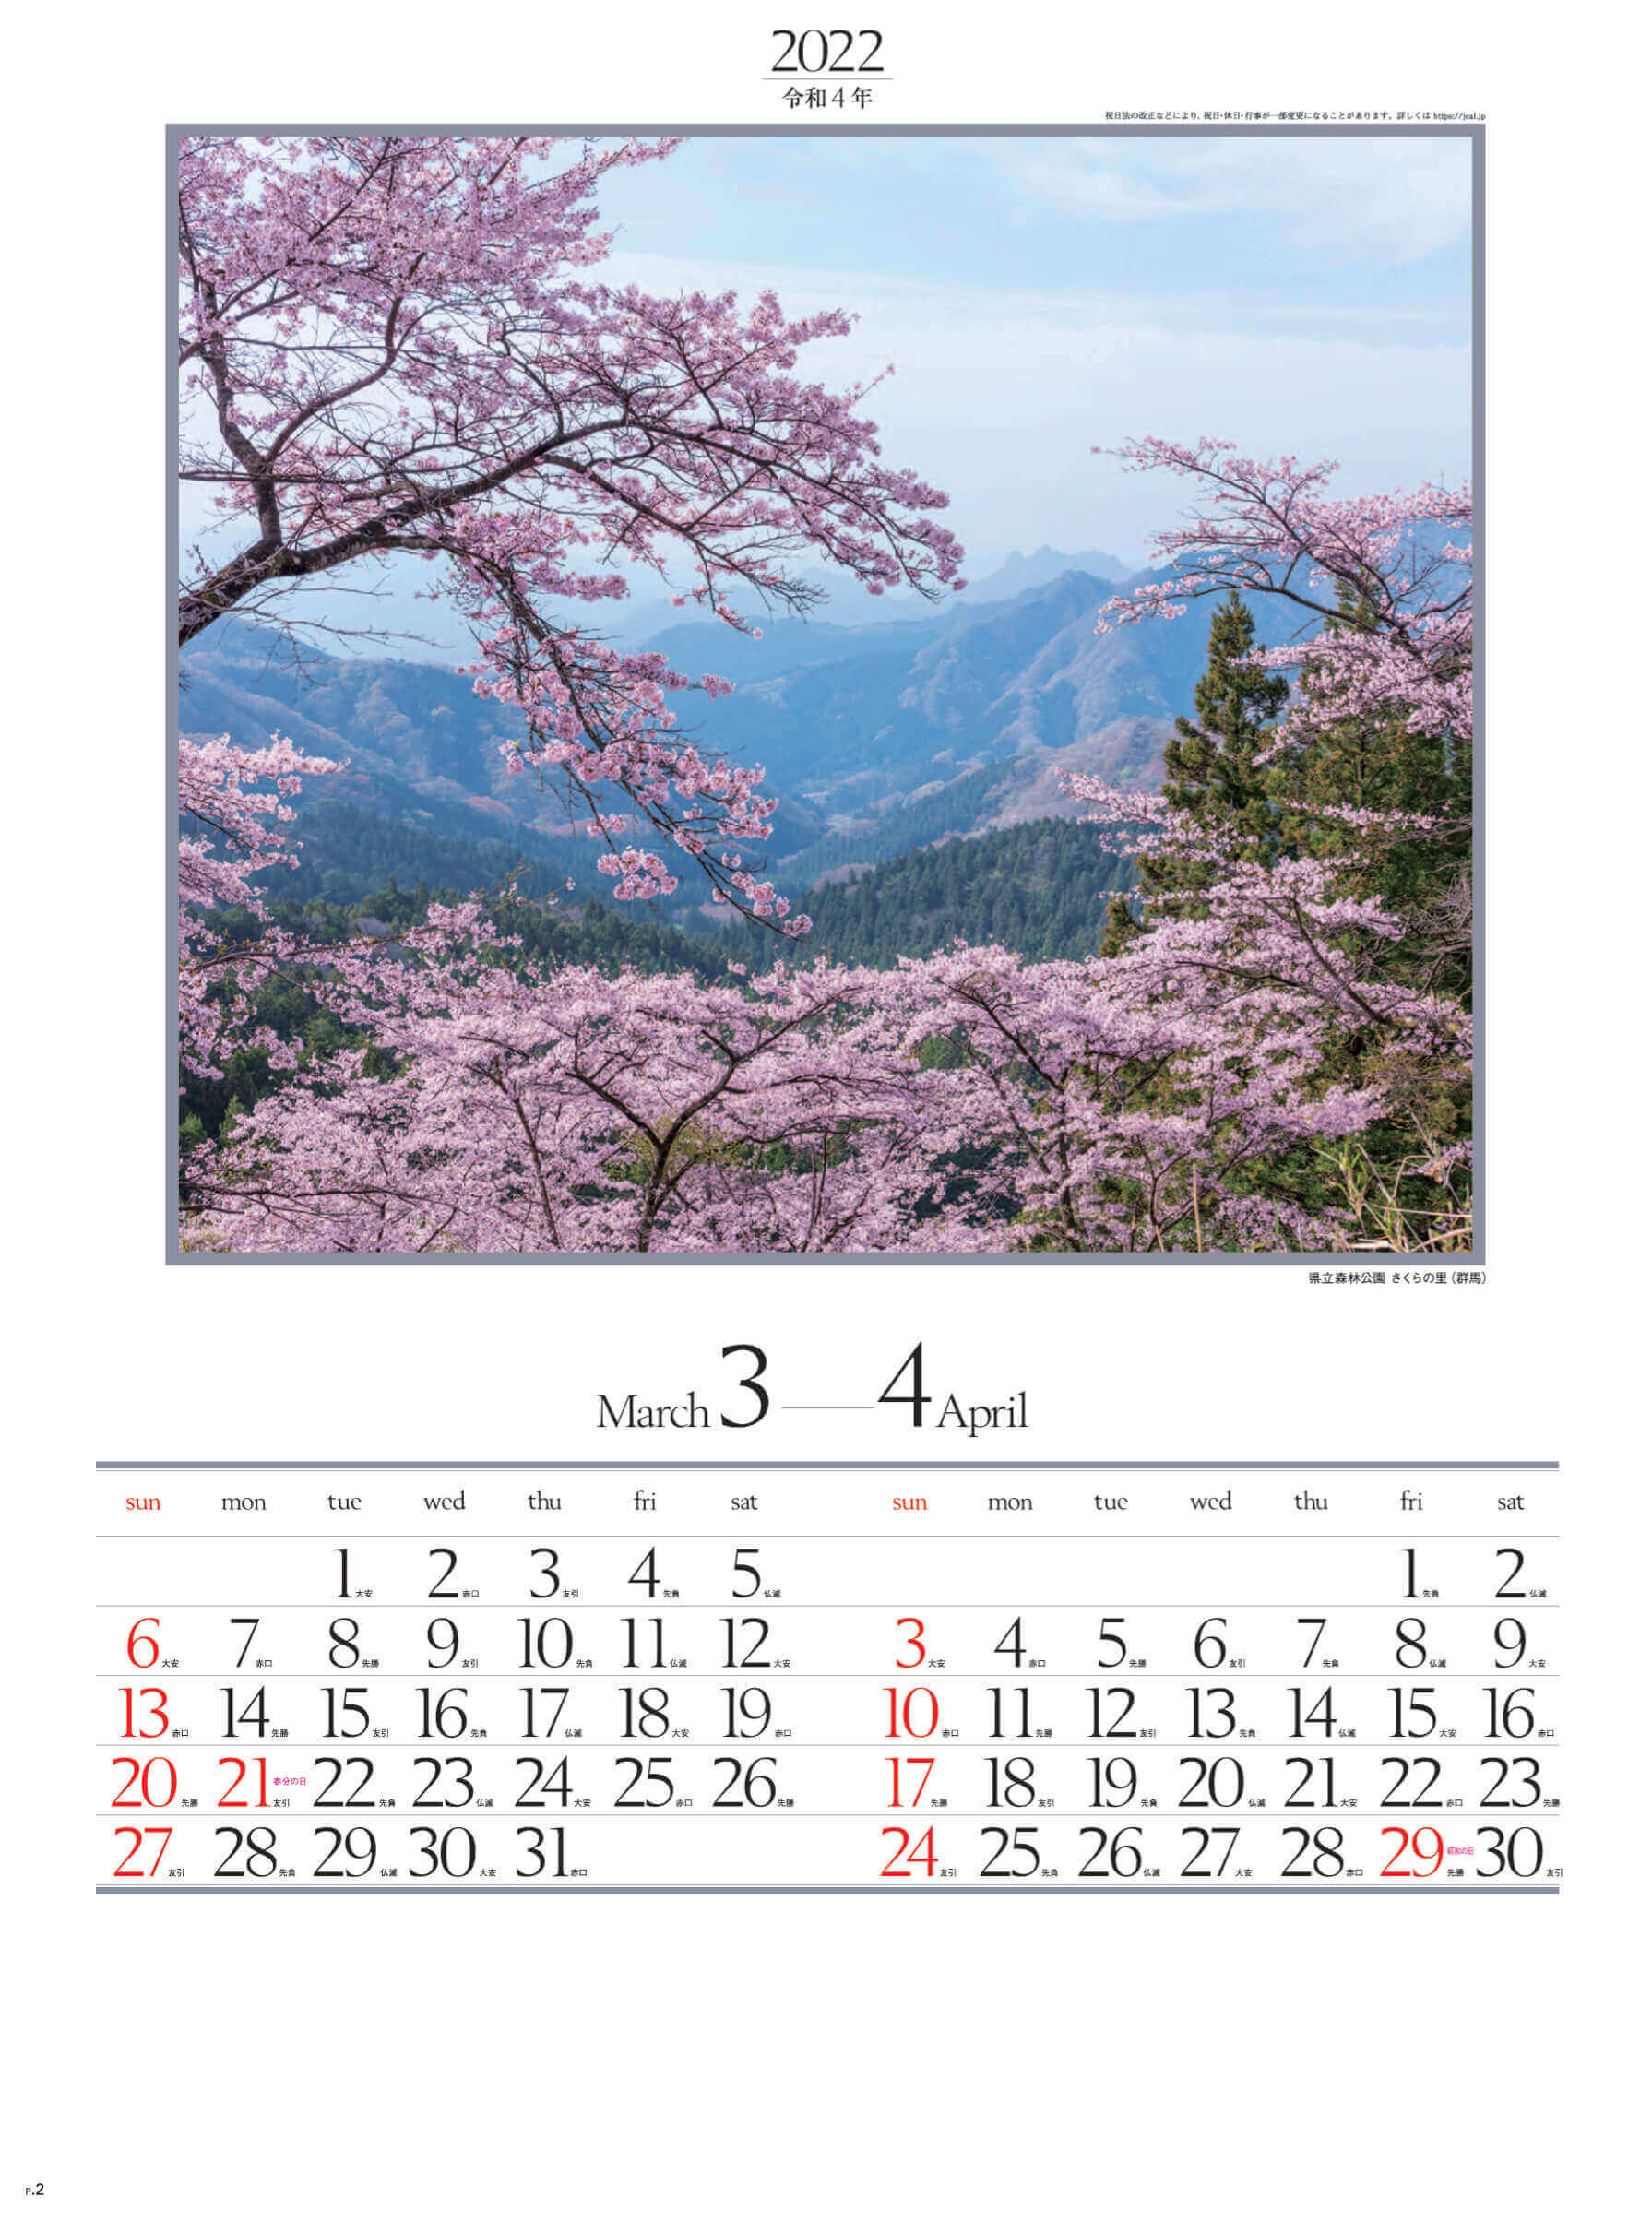 3-4月 県立森林公園 さくらの里(群馬) 四季六彩 2022年カレンダーの画像